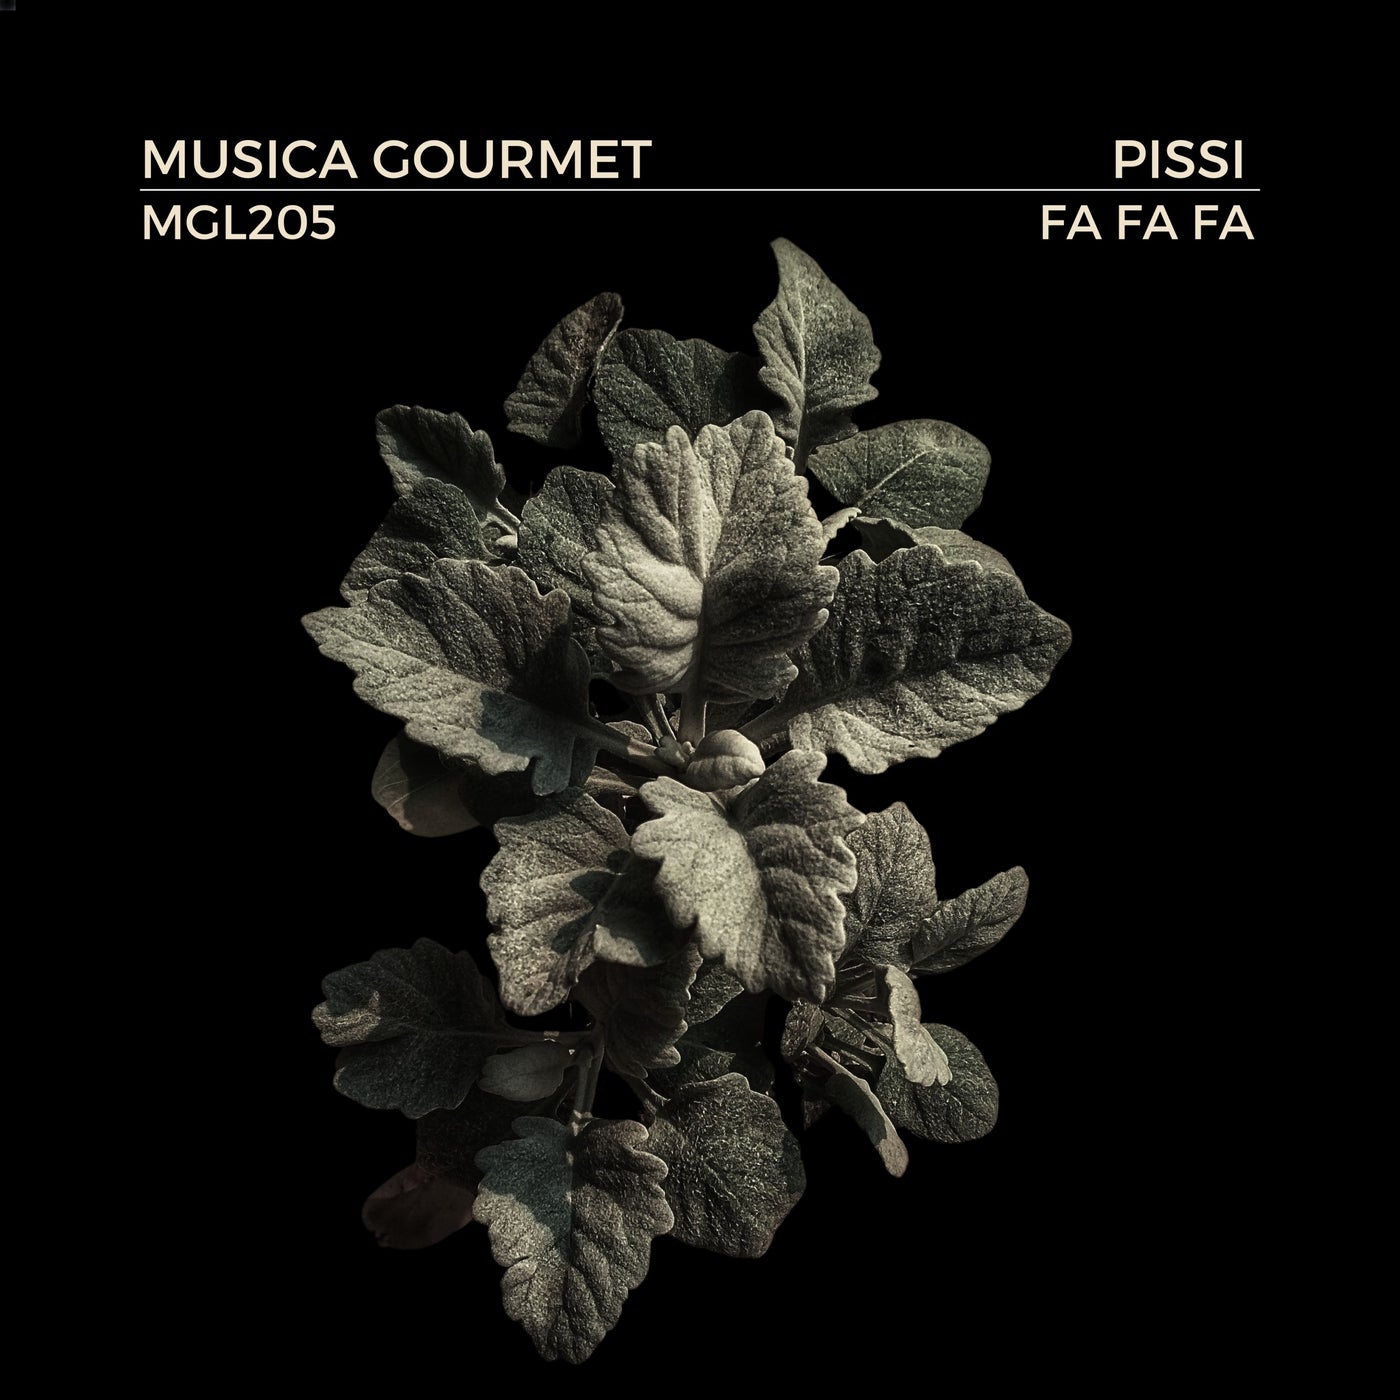 image cover: Pissi - Fa Fa Fa on Musica Gourmet